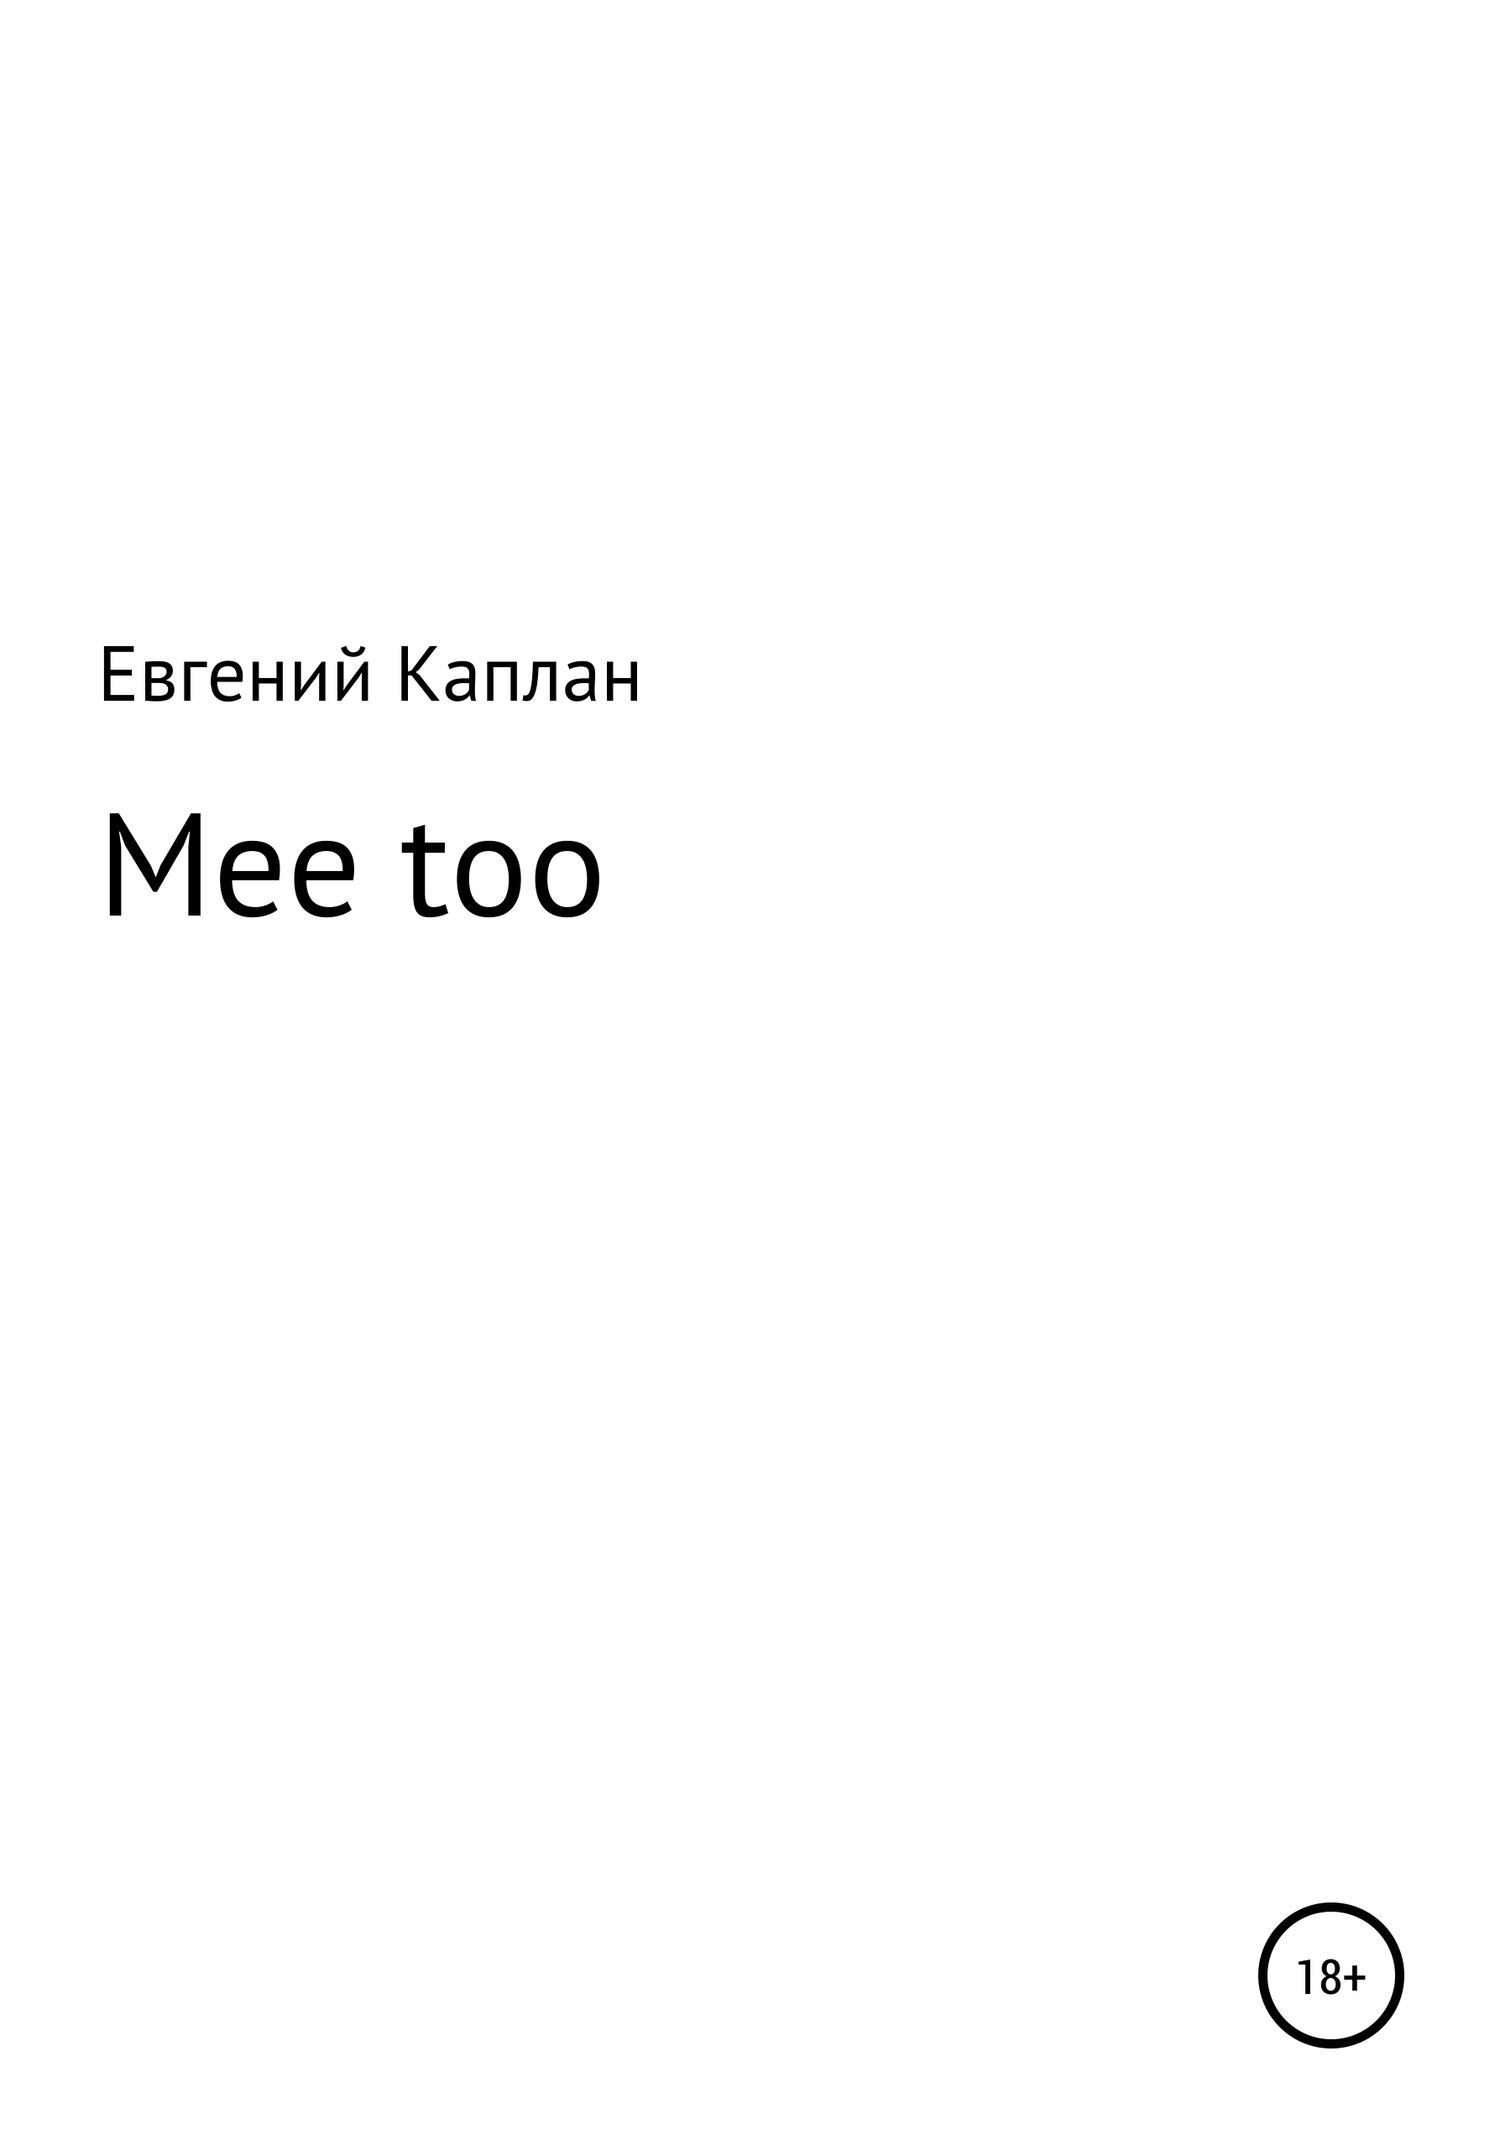 Mee too - Евгений Львович Каплан